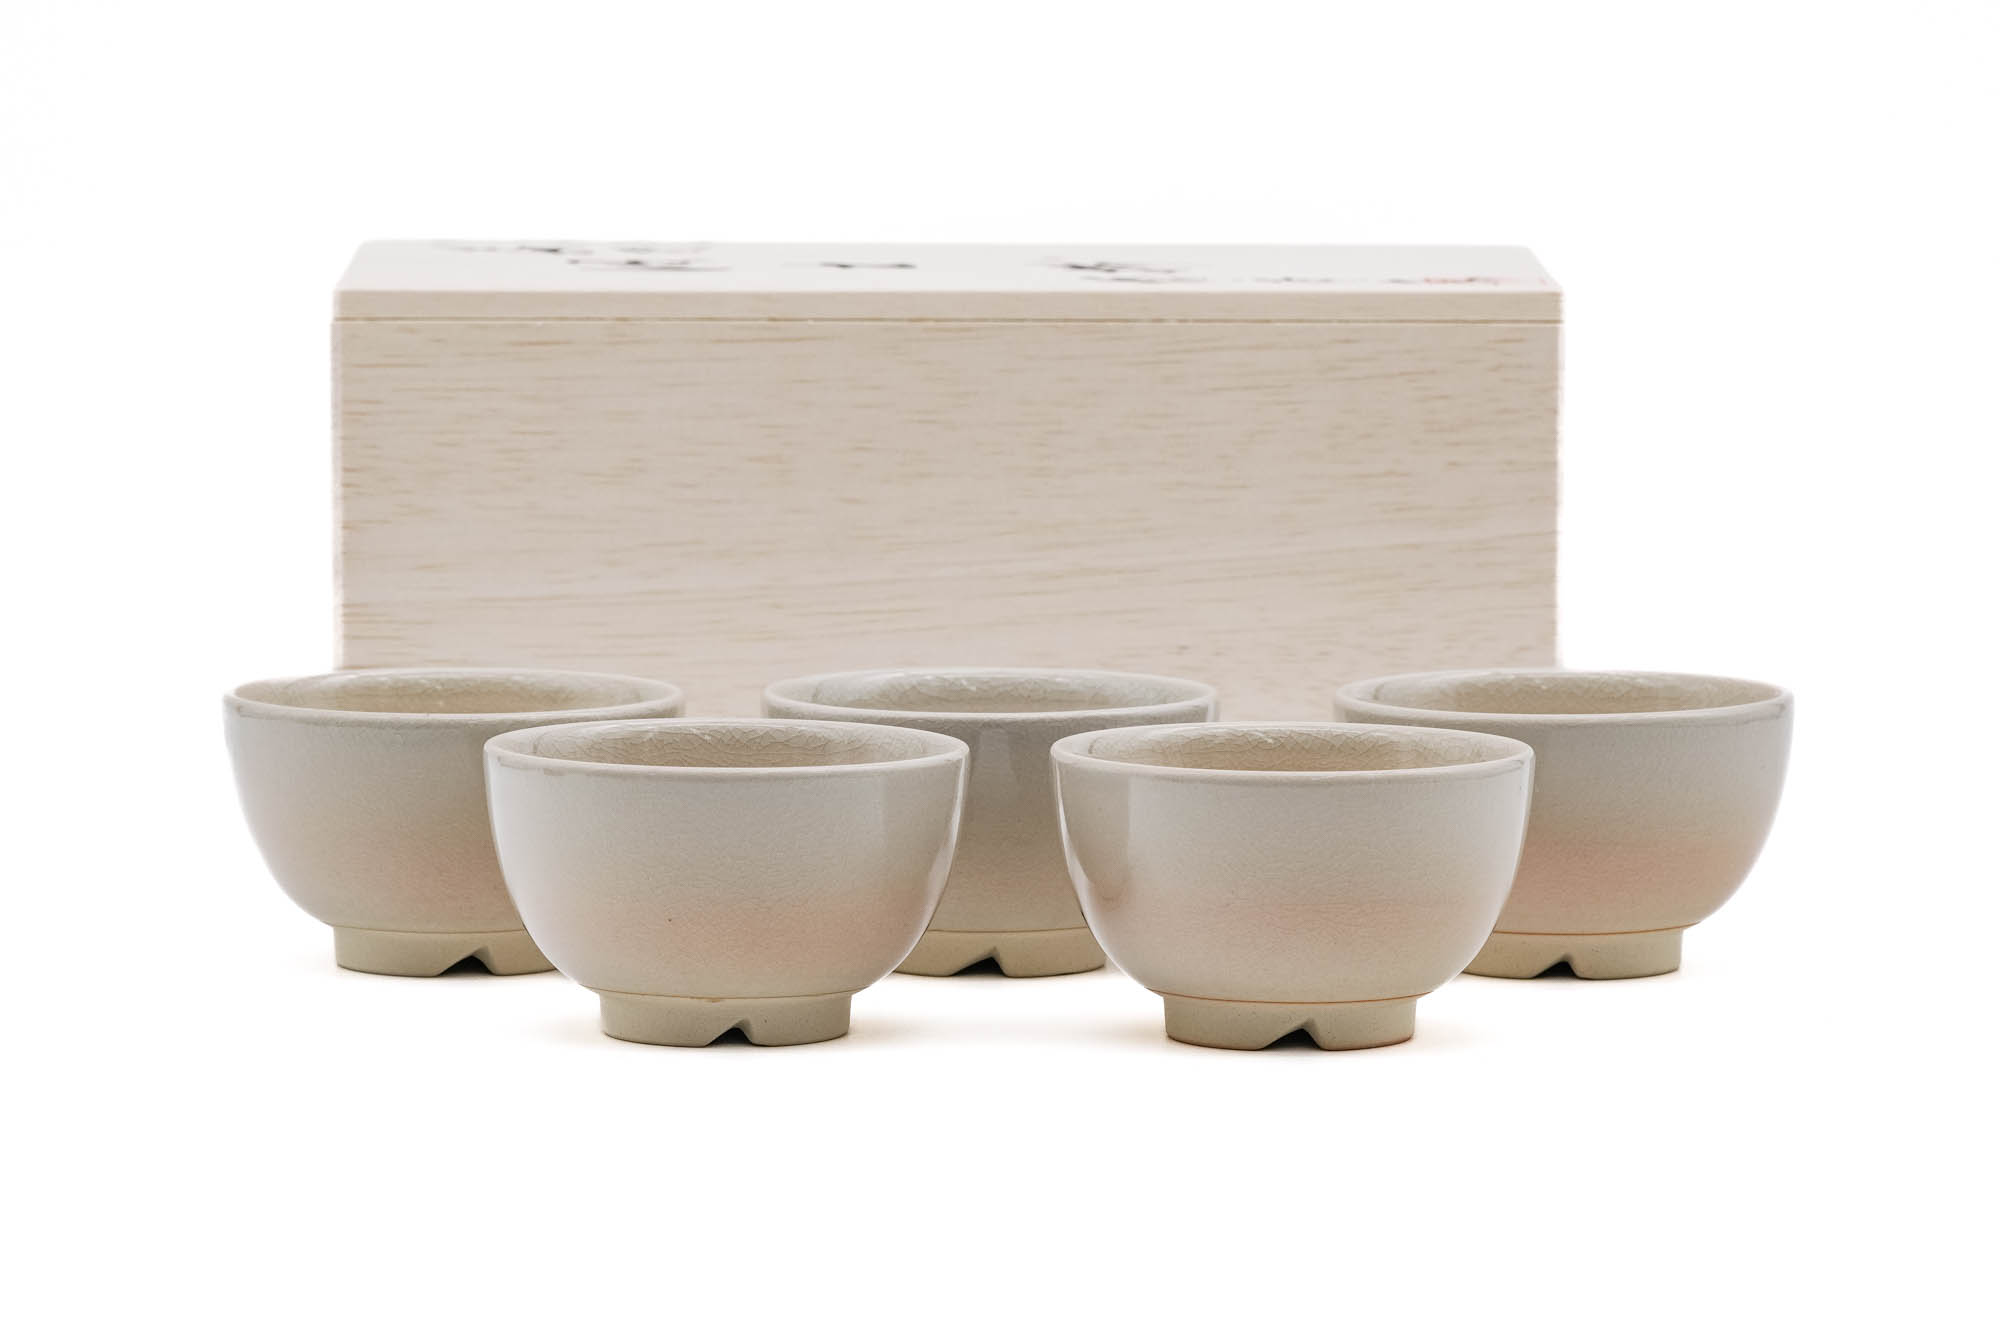 Japanese Teacups - 椿秀窯 Tsubakihide Kiln - Wooden Box Set of 5 Beige Hagi-yaki Yunomi - 100ml